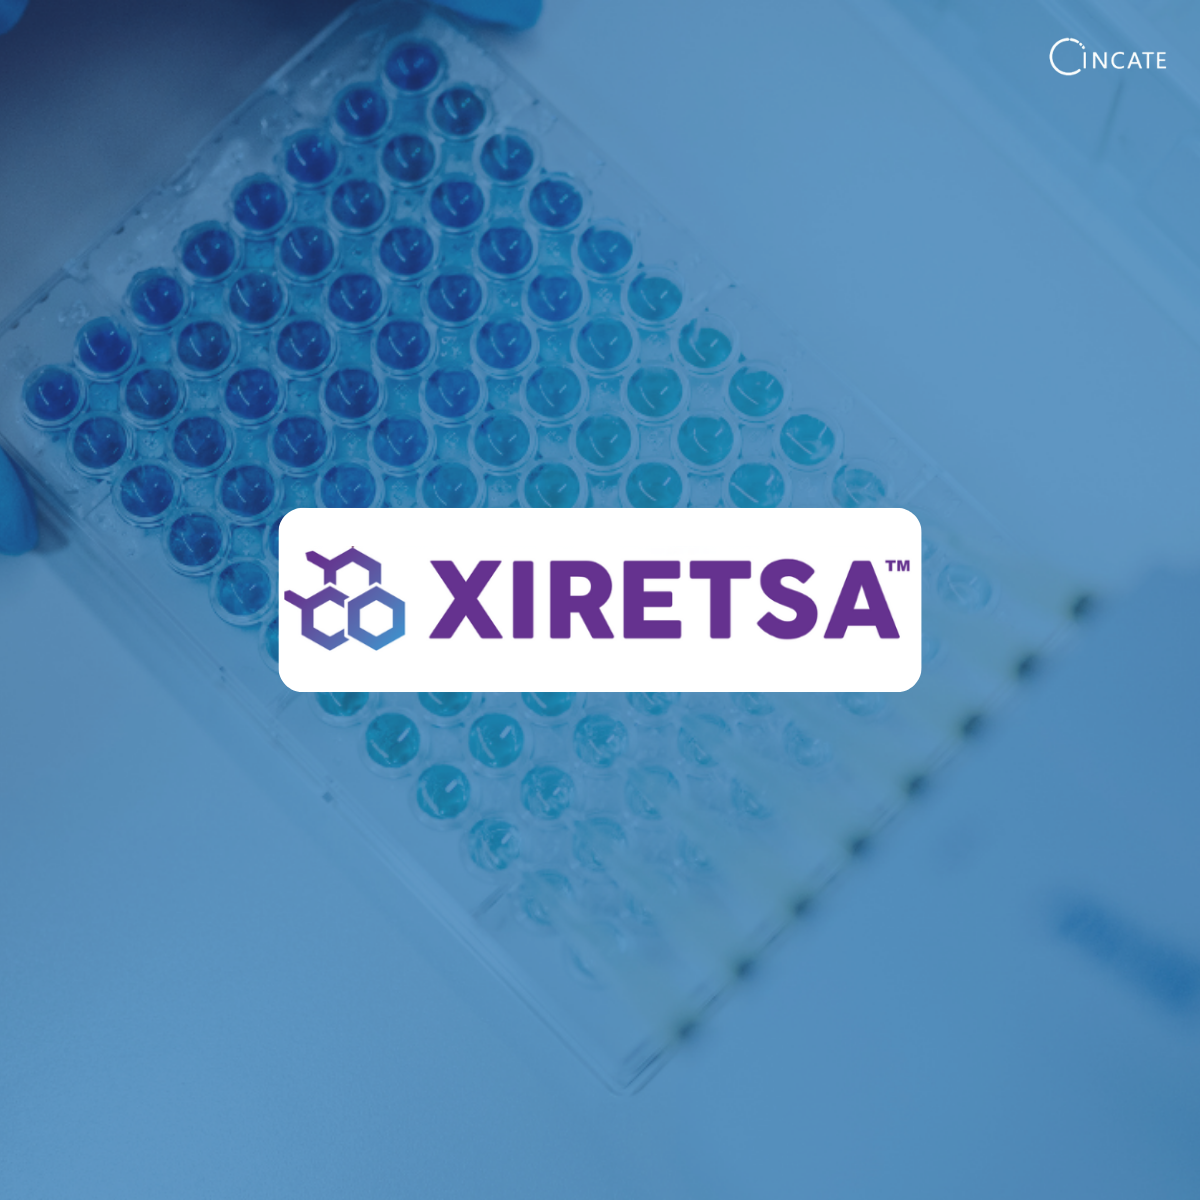 Xirestsa Stage II funding